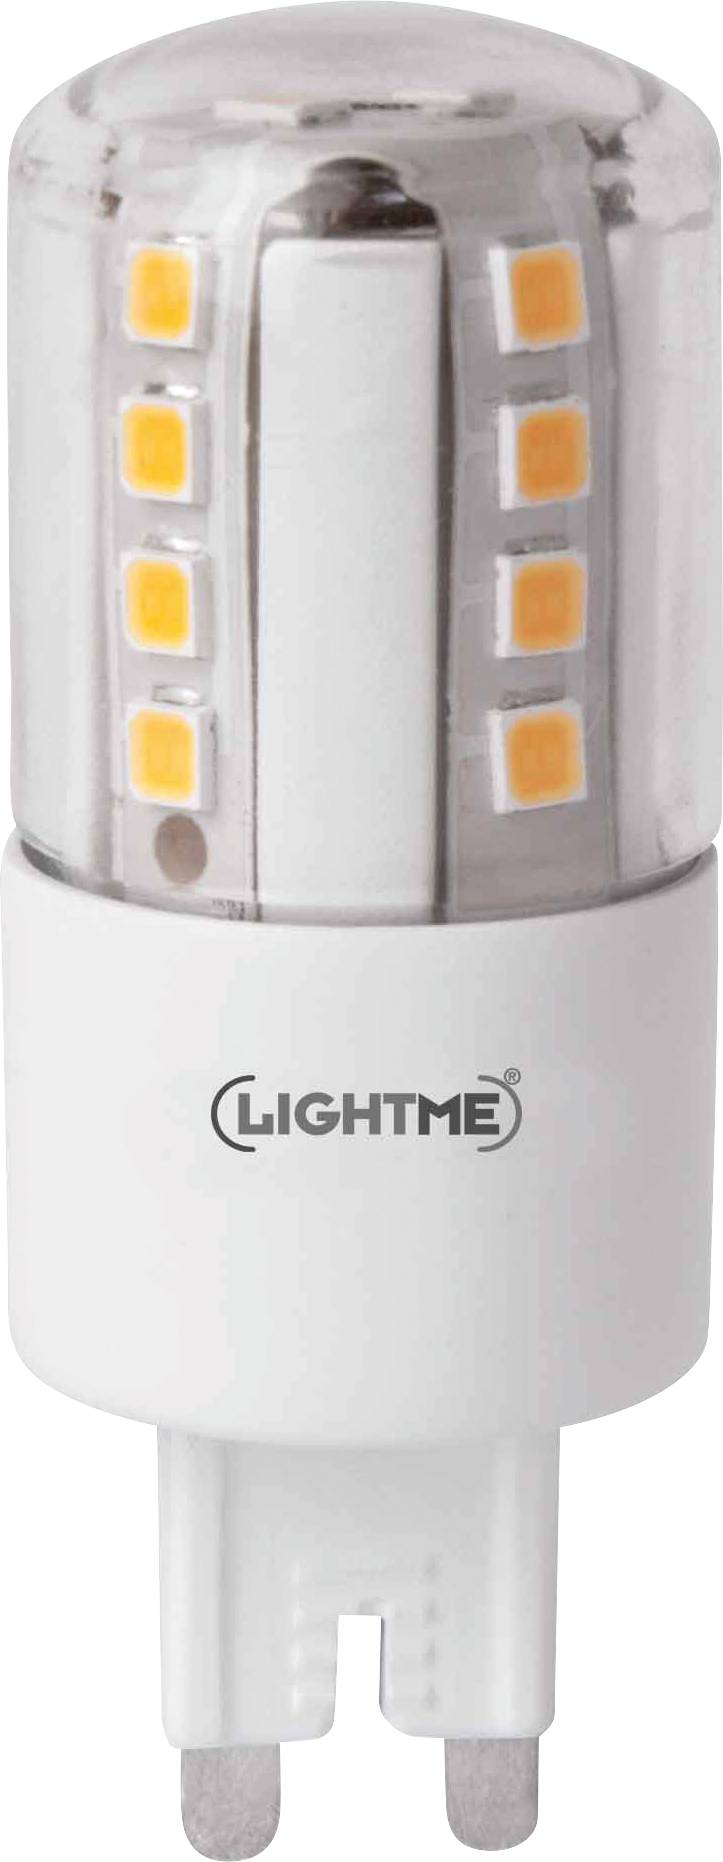 LIGHTME LED EEK A++ (A++ - E) G9 Stiftsockel 4.5 W = 42 W Warmweiß (Ø x L) 24 mm x 64 mm dimmba